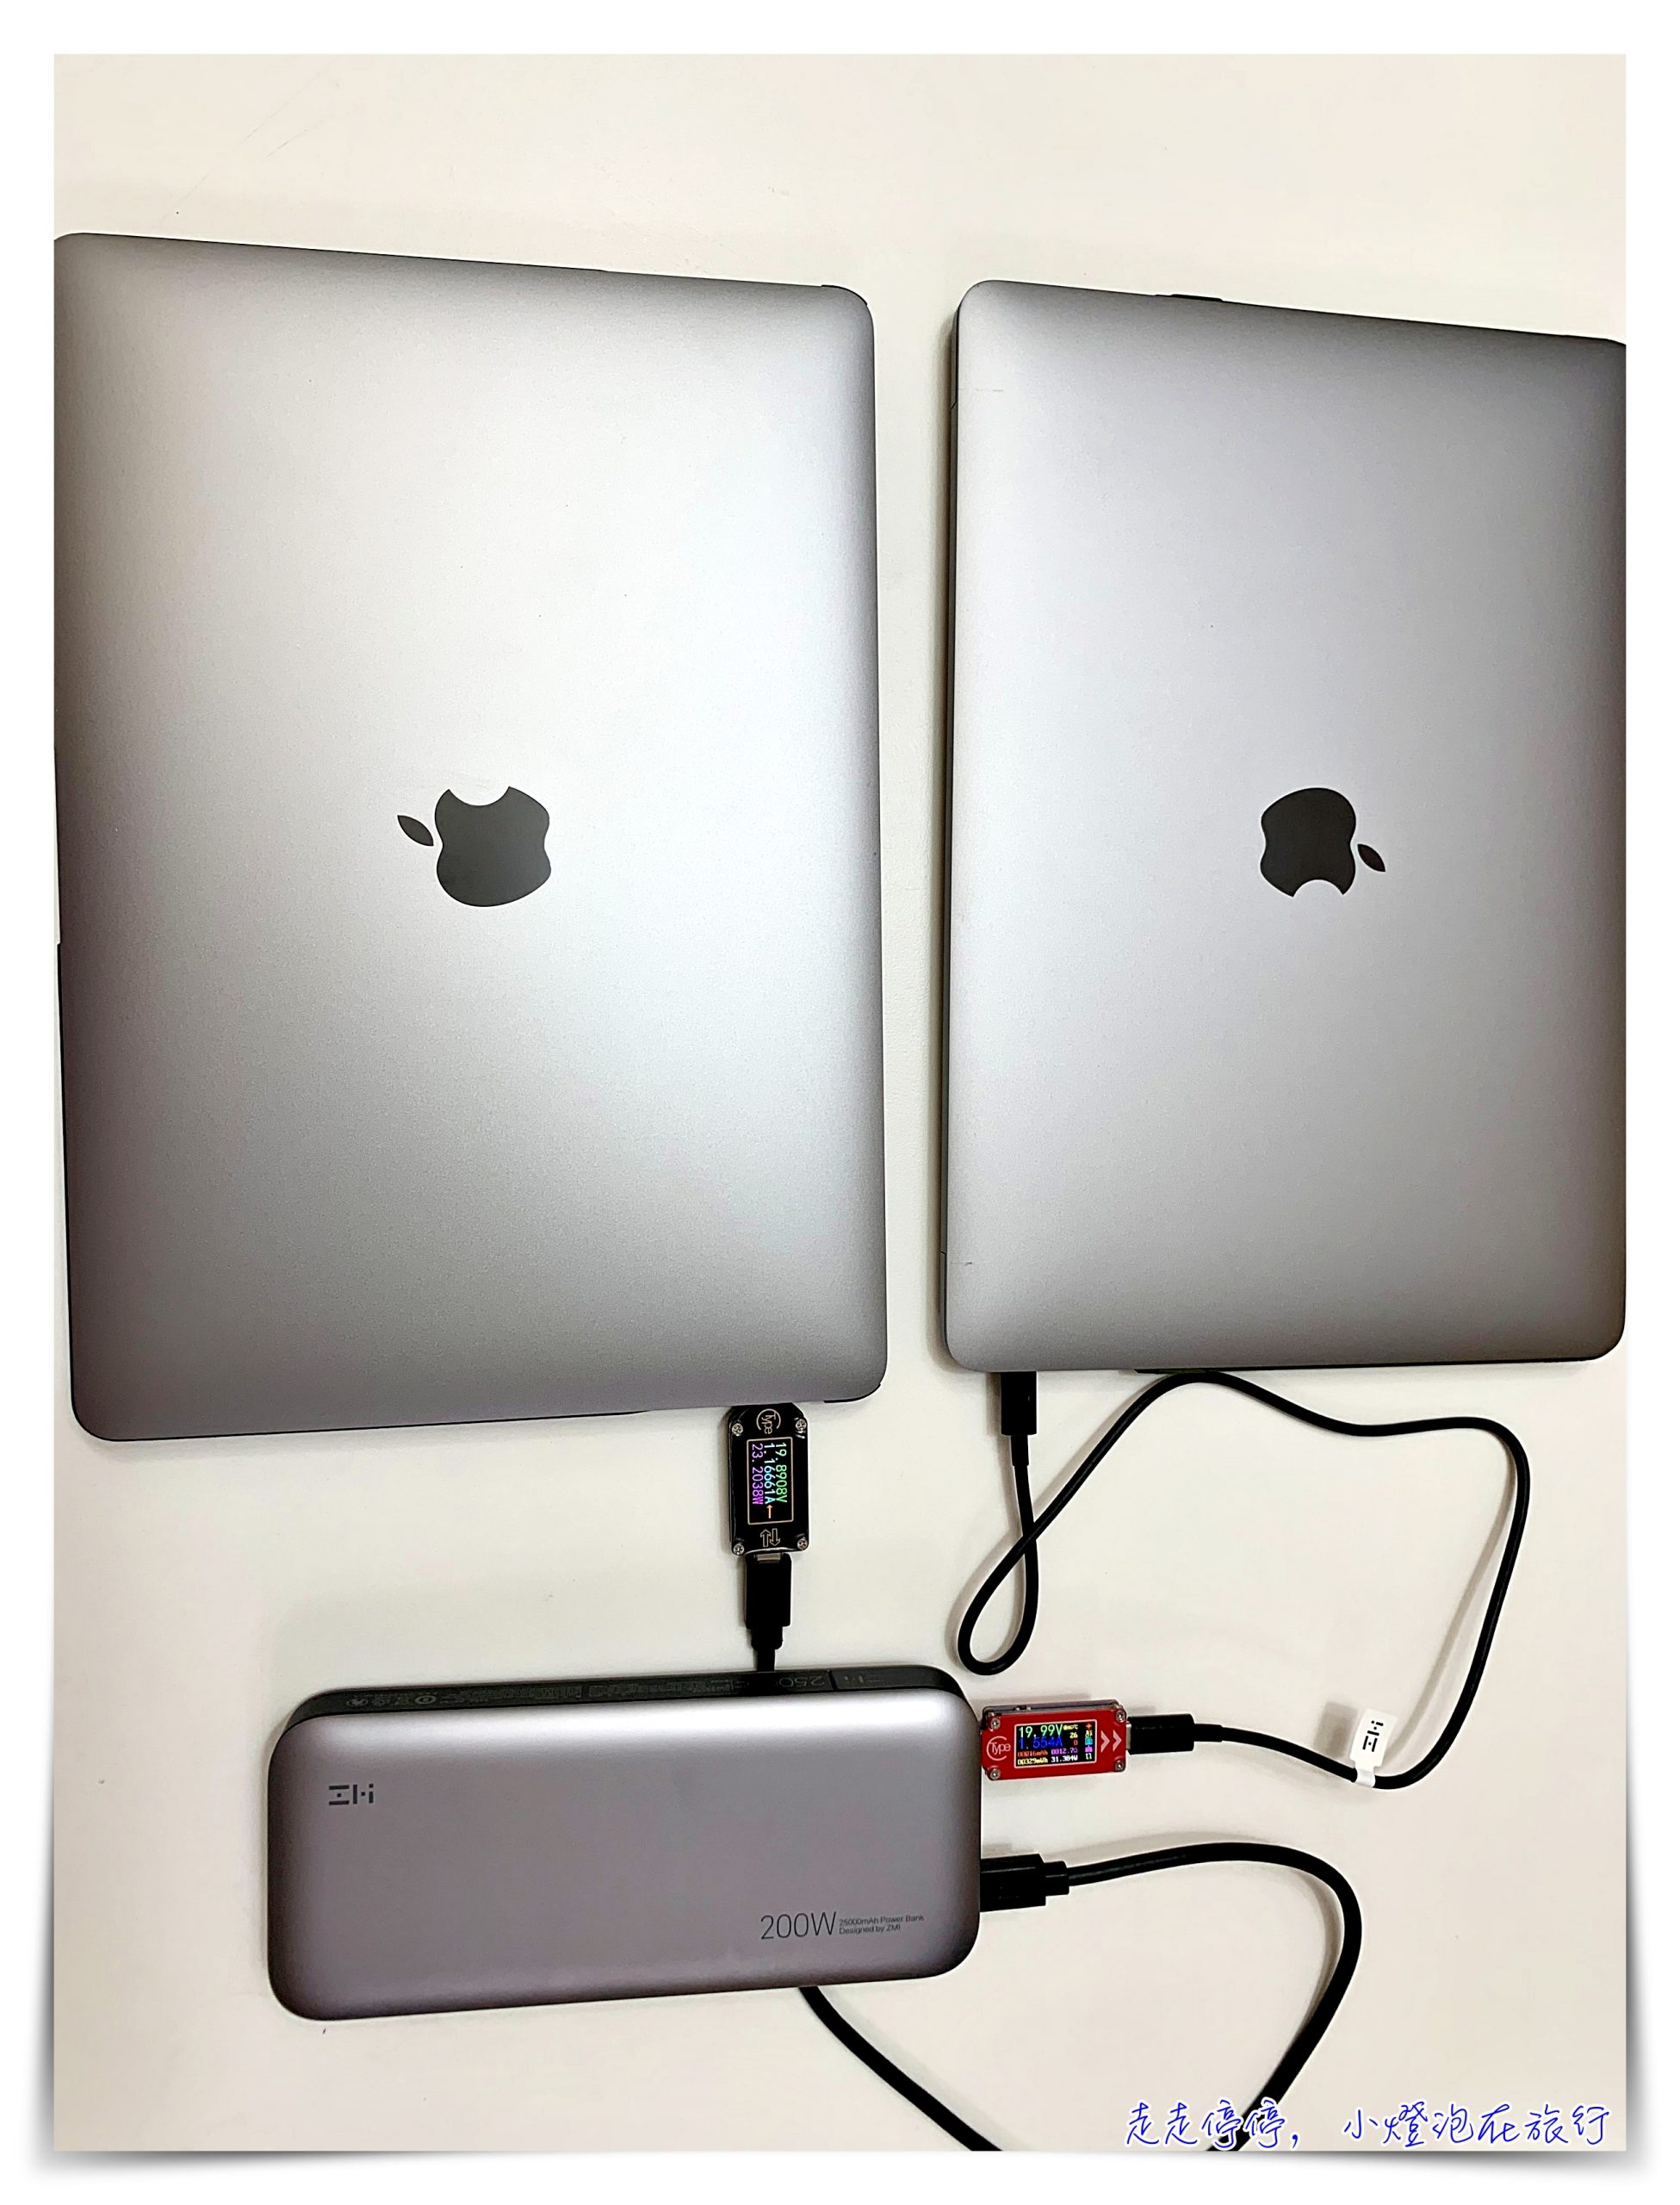 紫米 ZMI 20 號行動電源   25000mAh 大容量、總輸出功率達200W、可充兩台Macbook pro